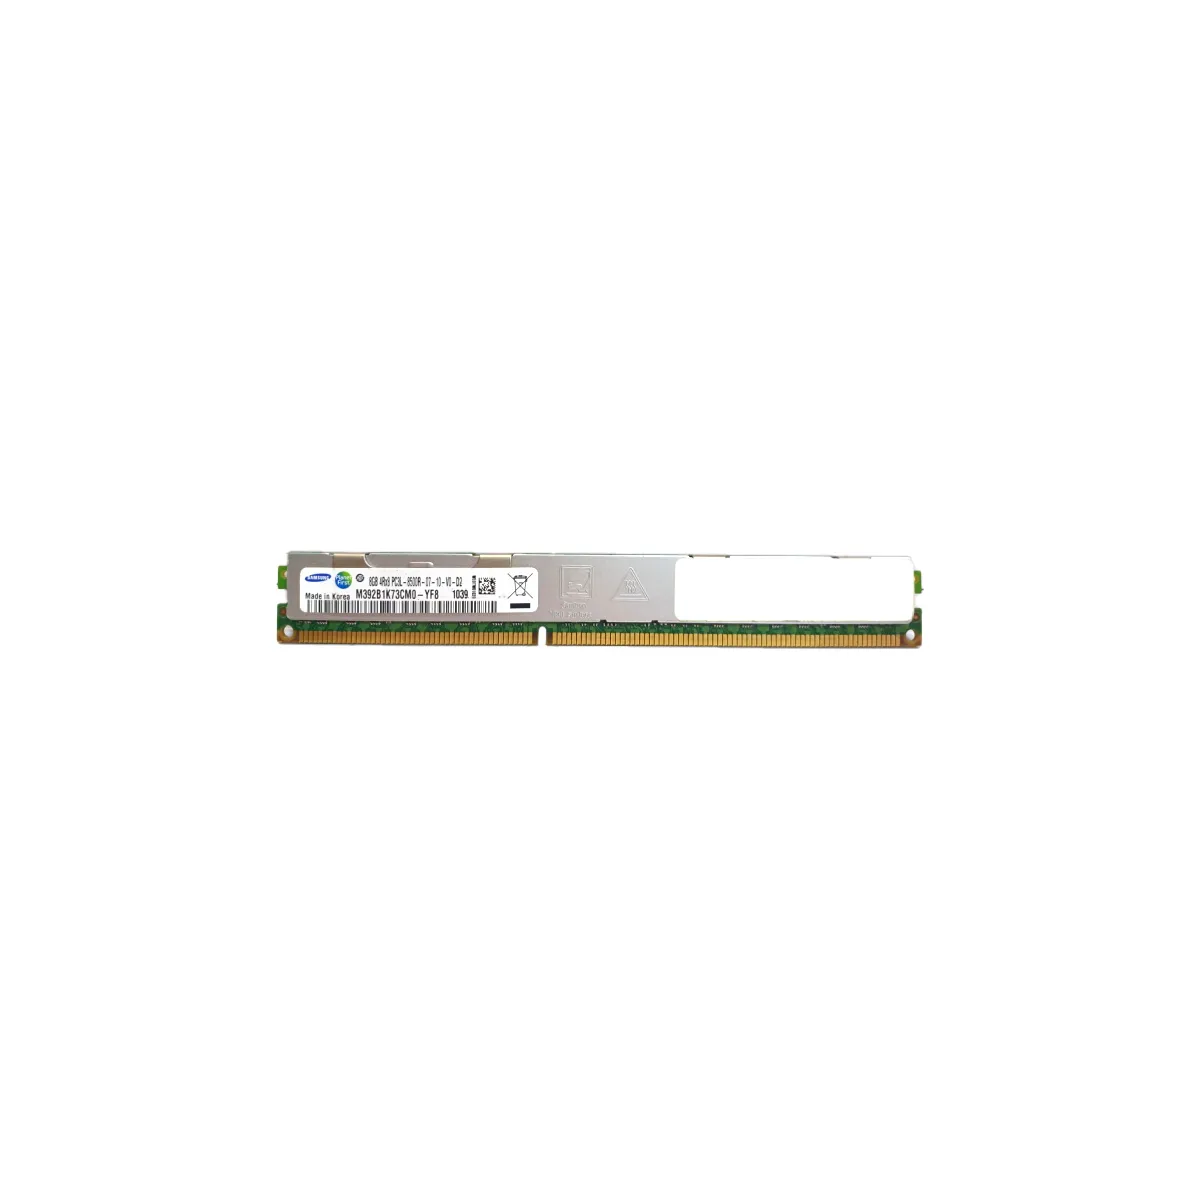 Samsung (M392B1K73CM0-YF8) - 8GB PC3L-8500R (4Rx8, DDR3-1066MHz) RAM